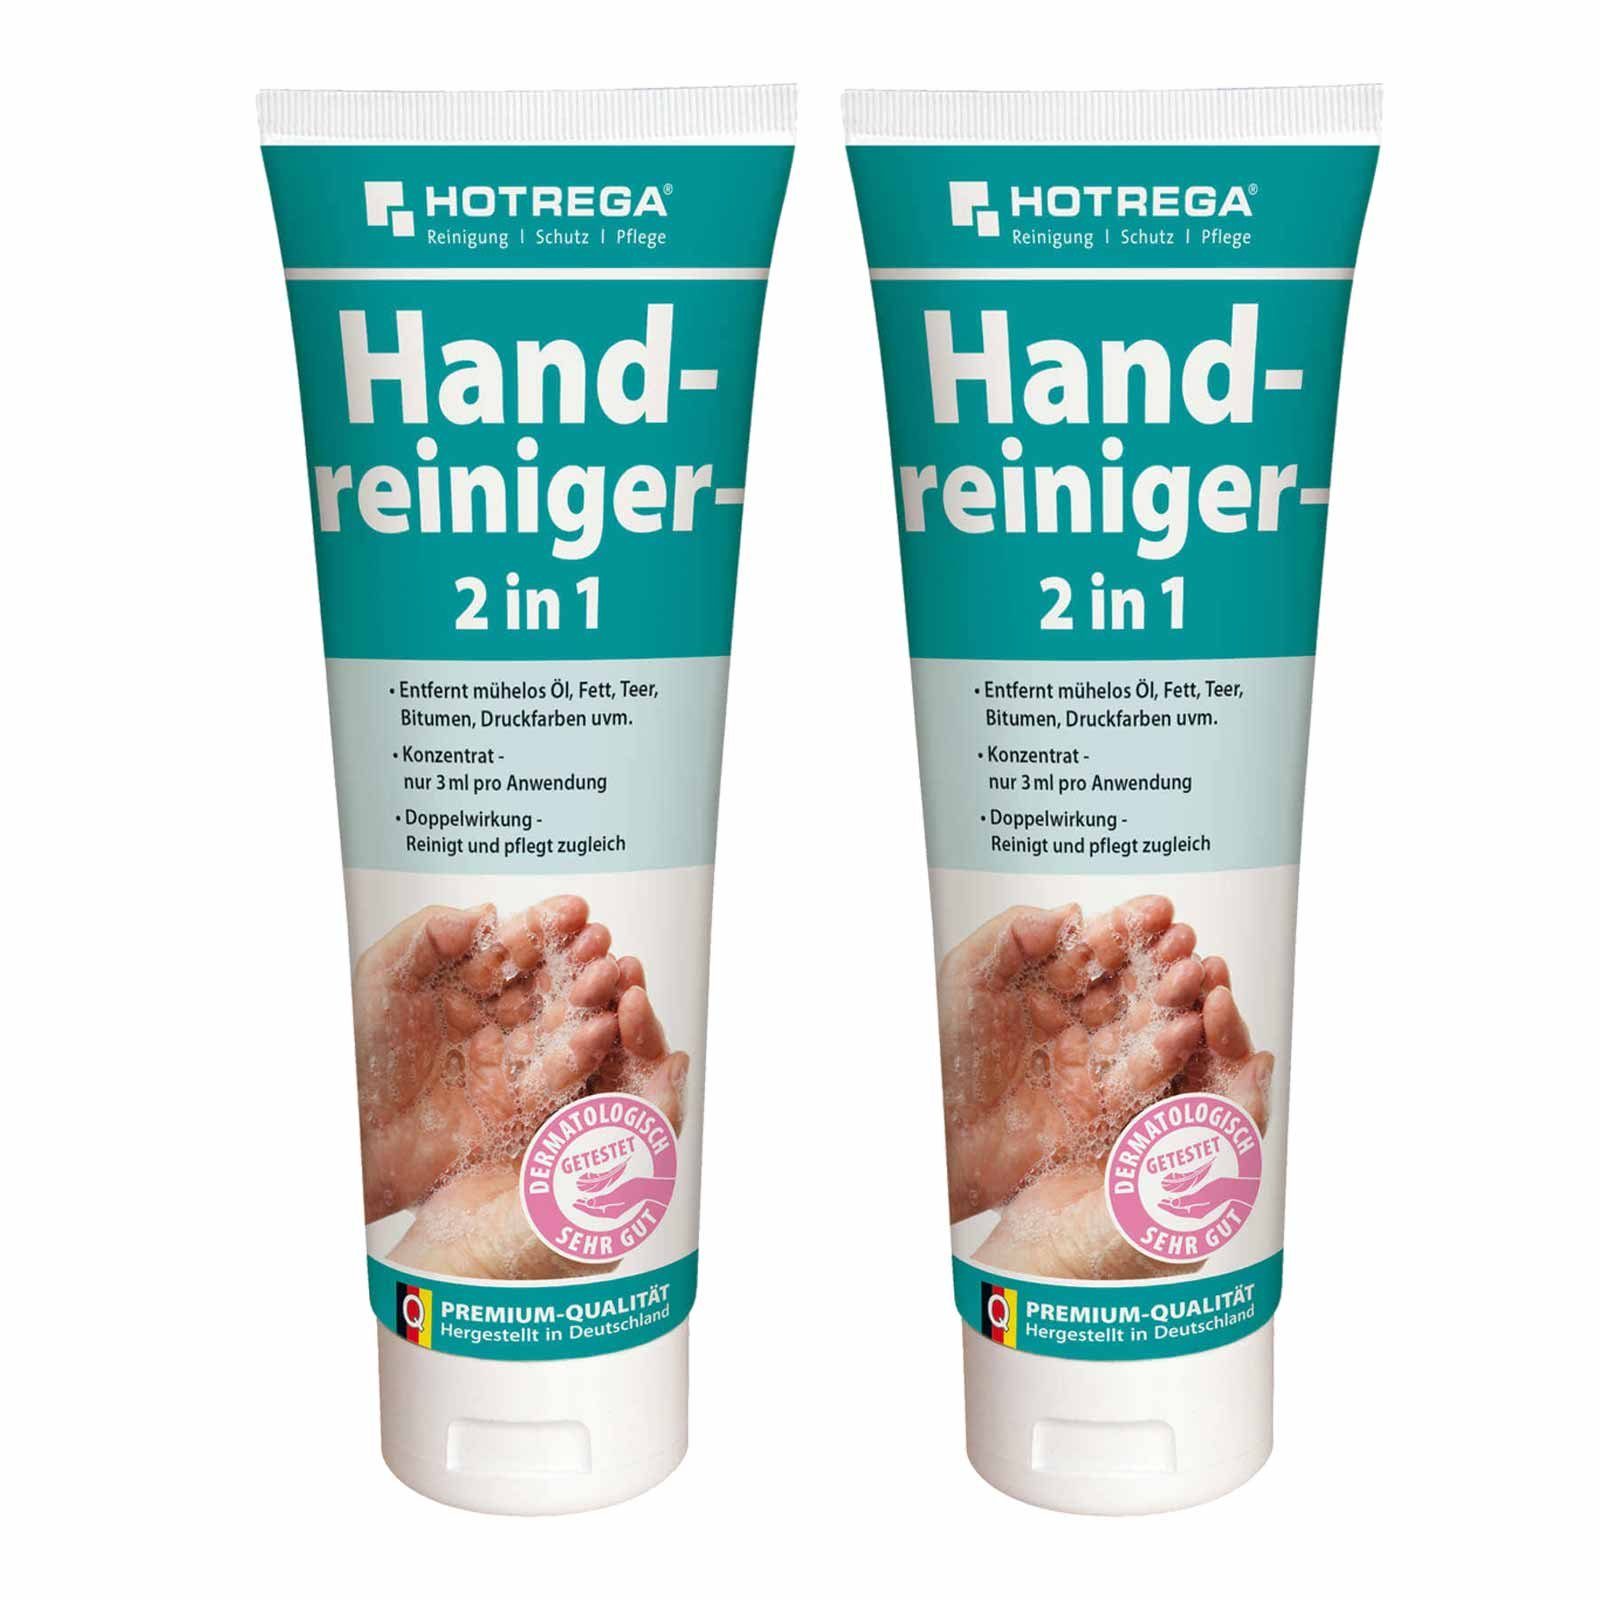 Handpflege Handcreme Hautpflege 2x250ml Waschpaste HOTREGA® Handwaschpaste Handreiniger